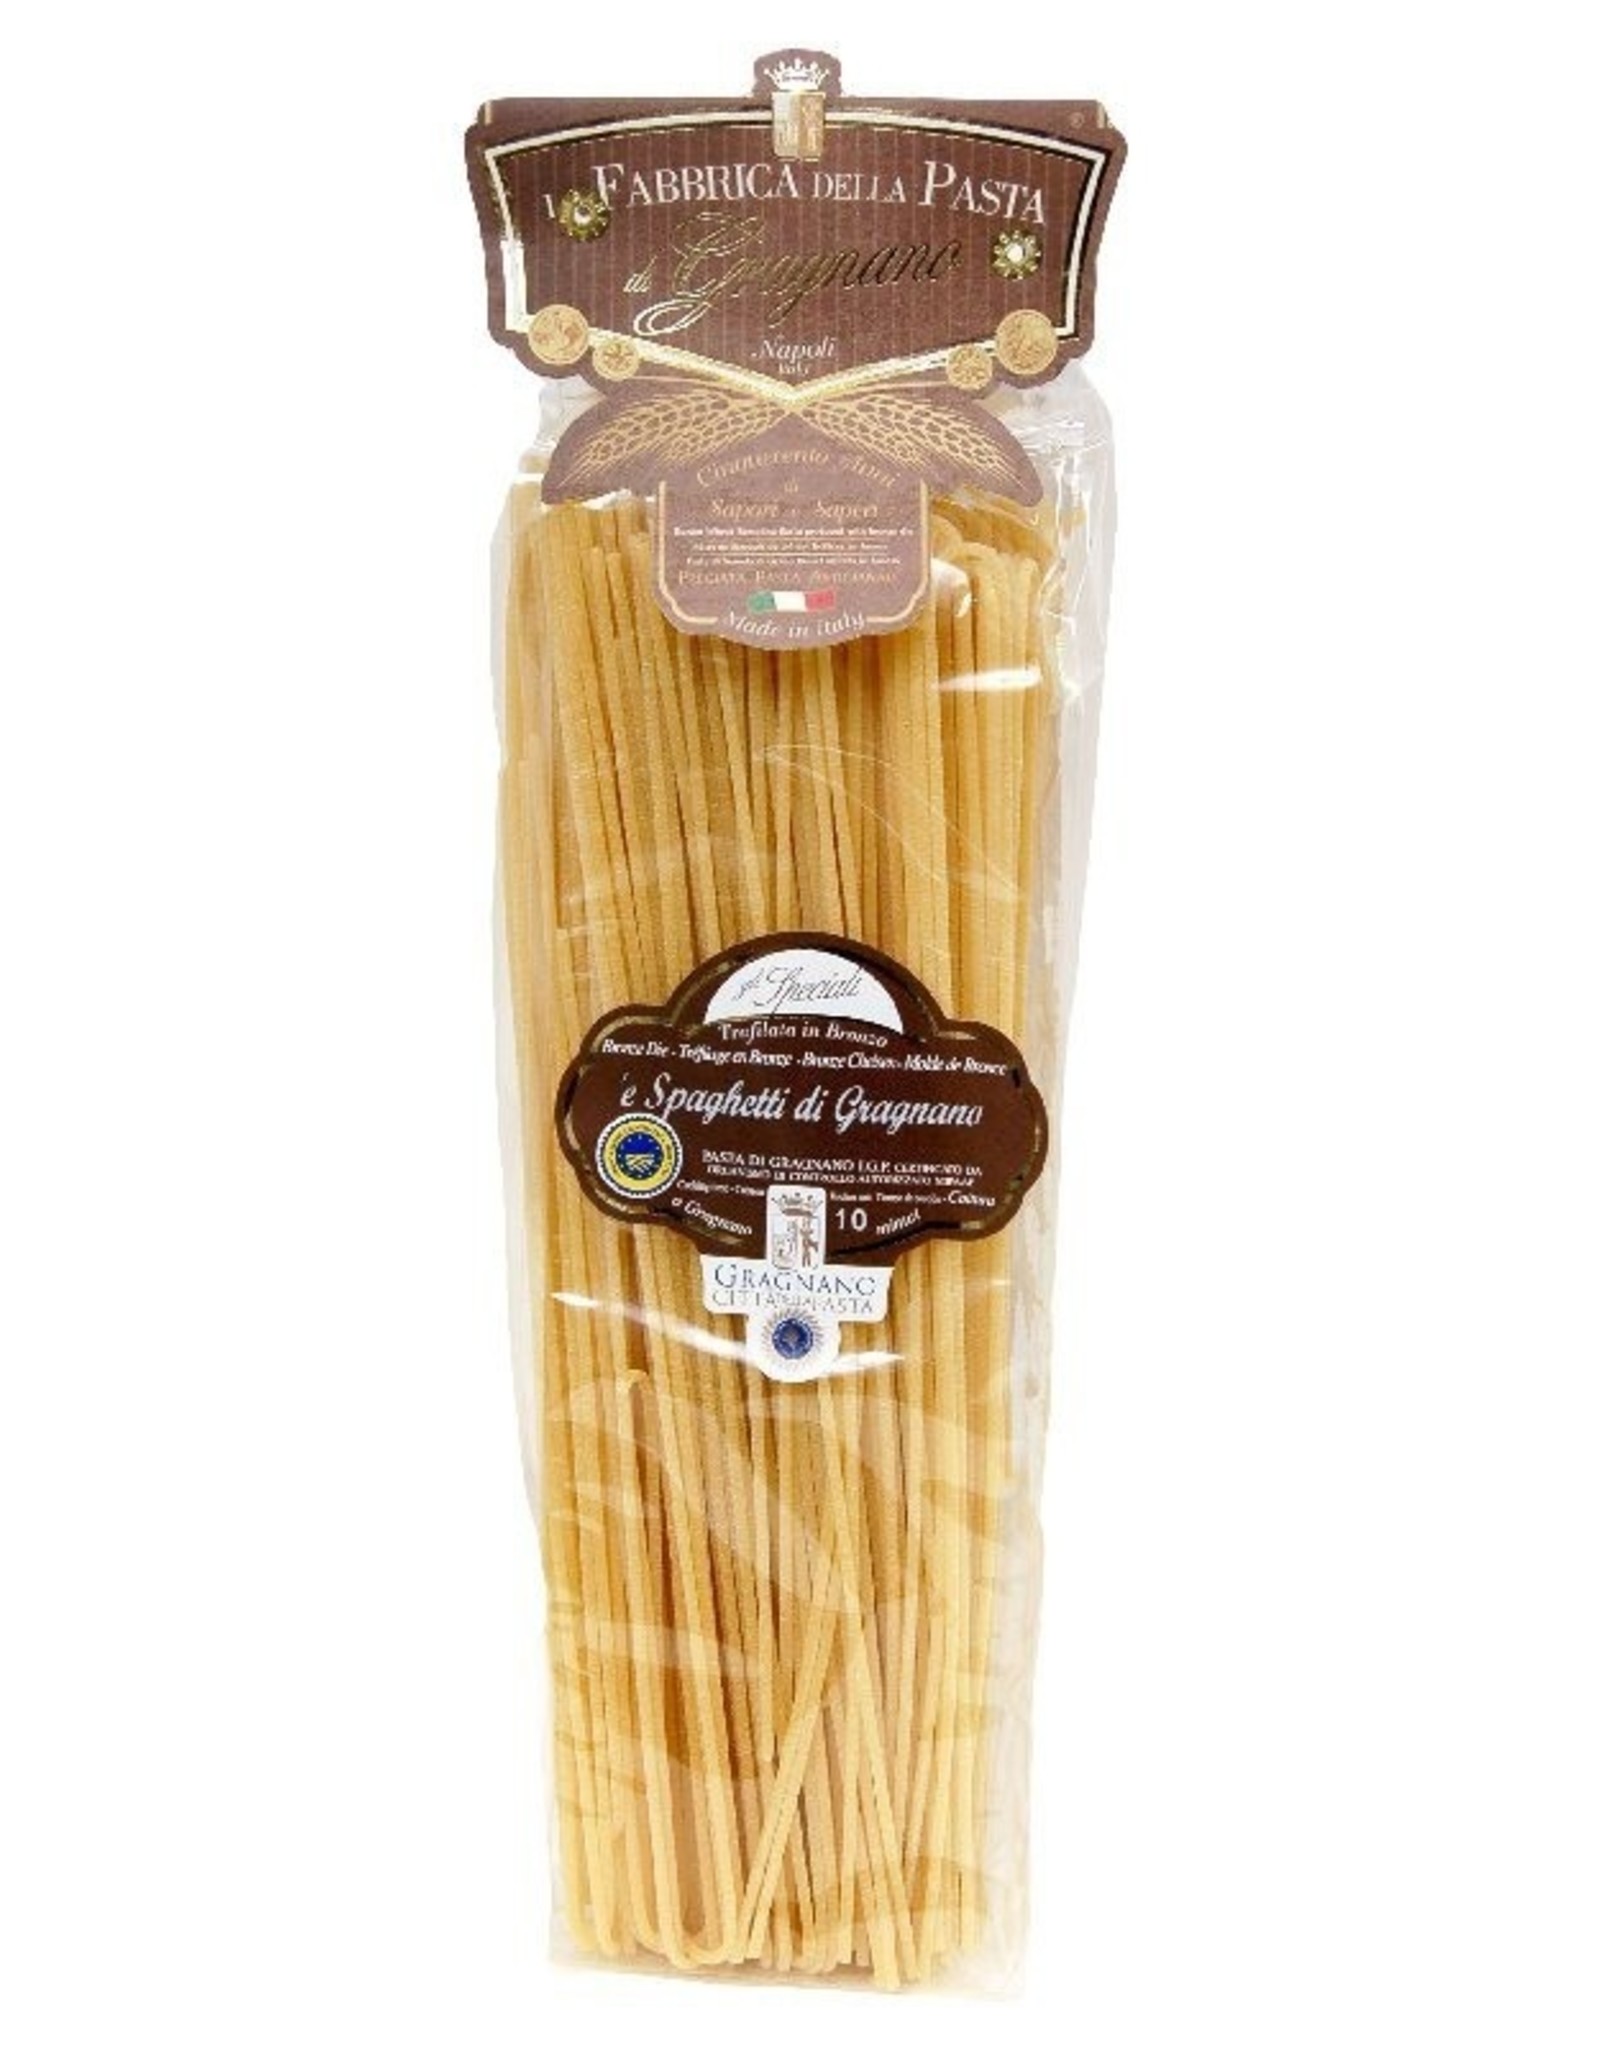 La Fabbrica della Pasta di Gragnano Spaghetti di Gragnano IGP